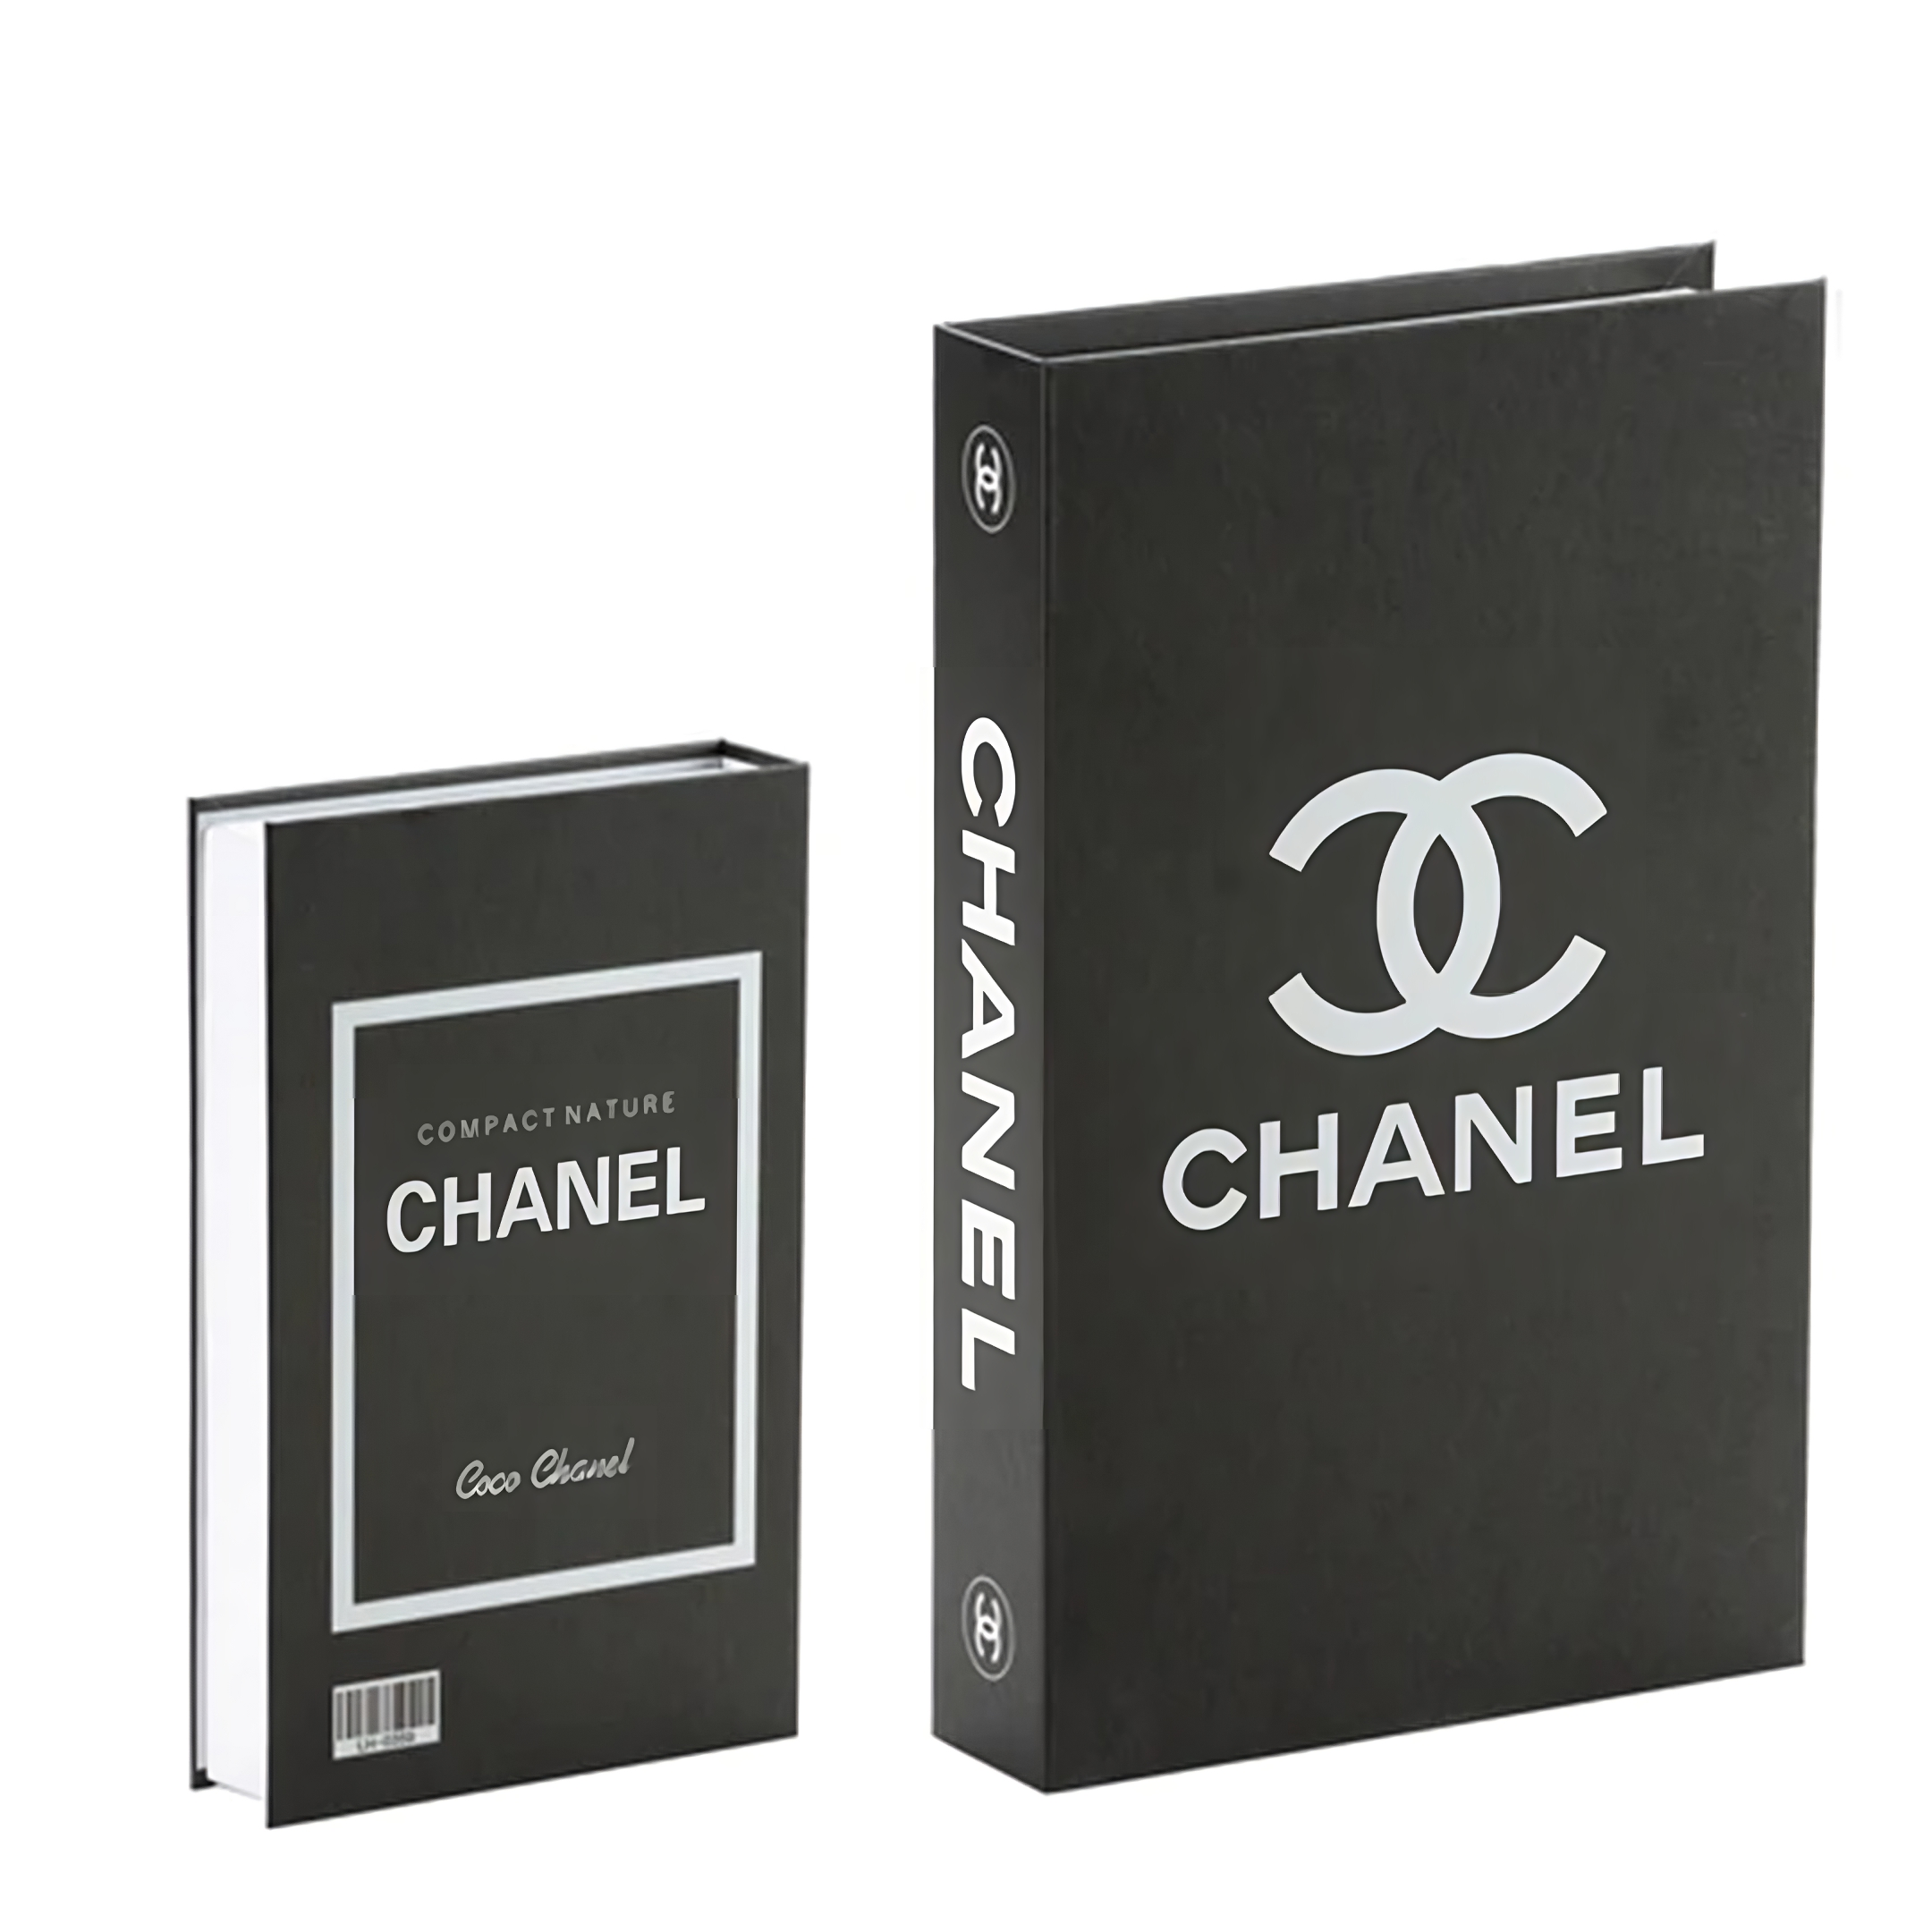 Decor Book - Coco Chanel – belmondoshop